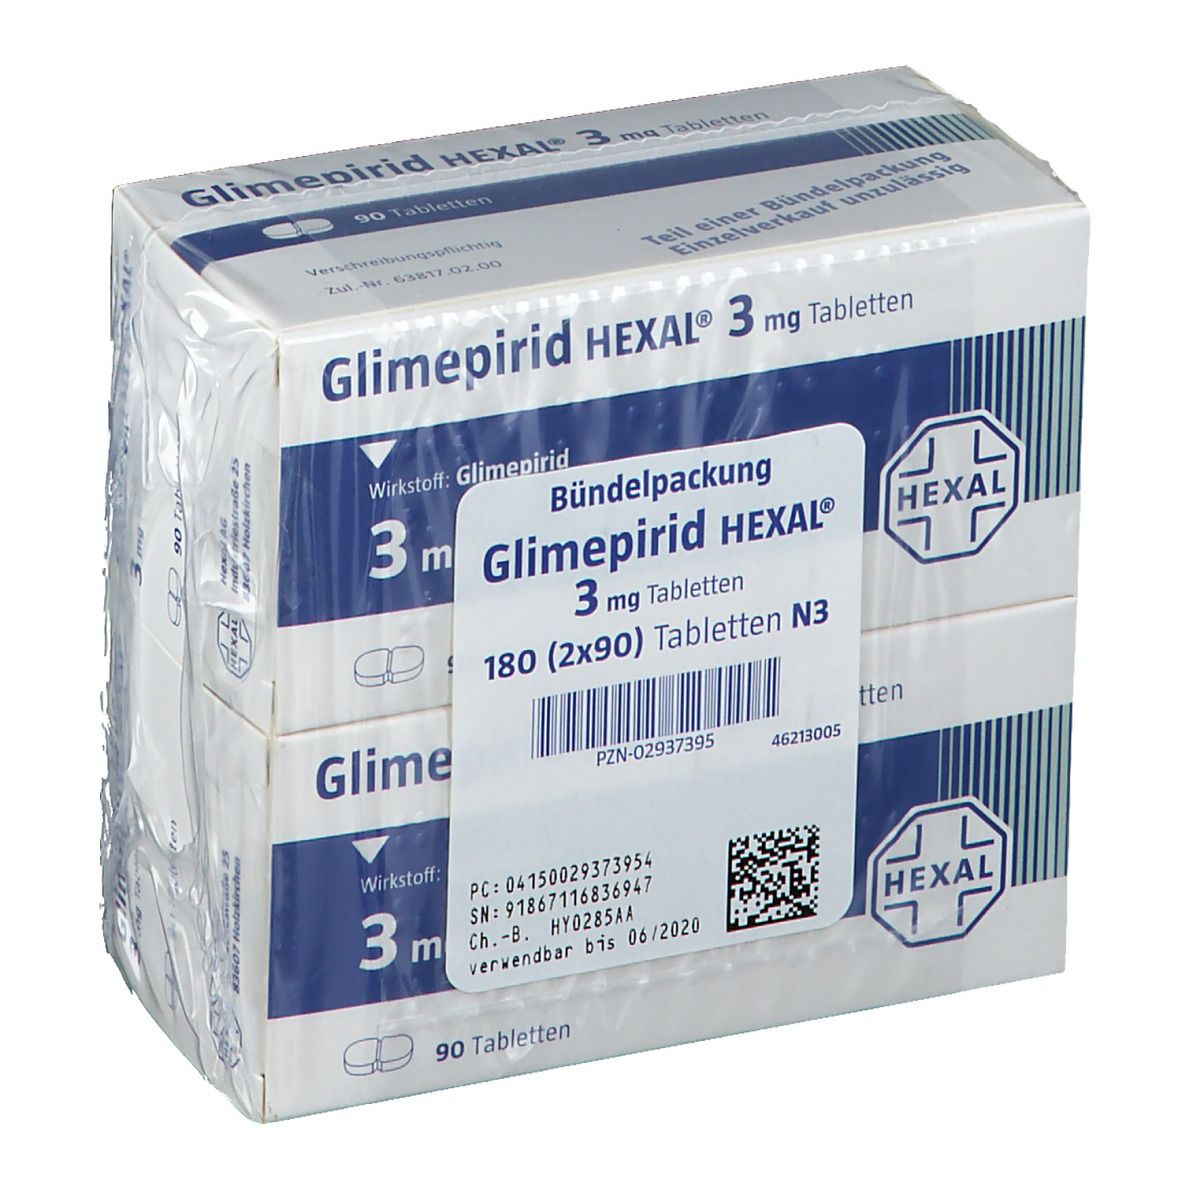 Glimepirid HEXAL® 3 mg